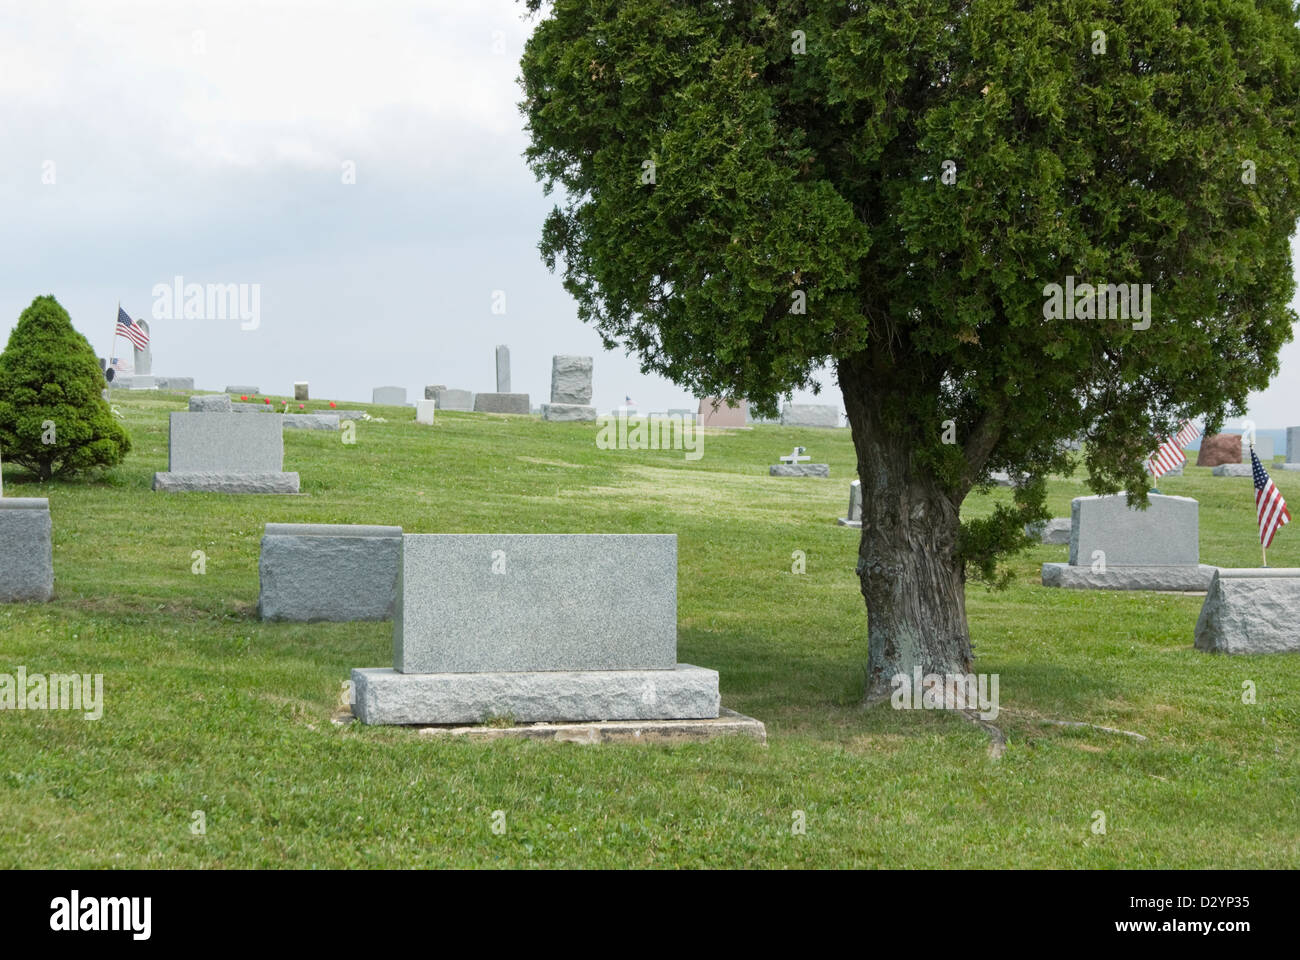 Stock photo de lápidas del cementerio en blanco en verano cementerio, listo para agregar su propio texto. Foto de stock